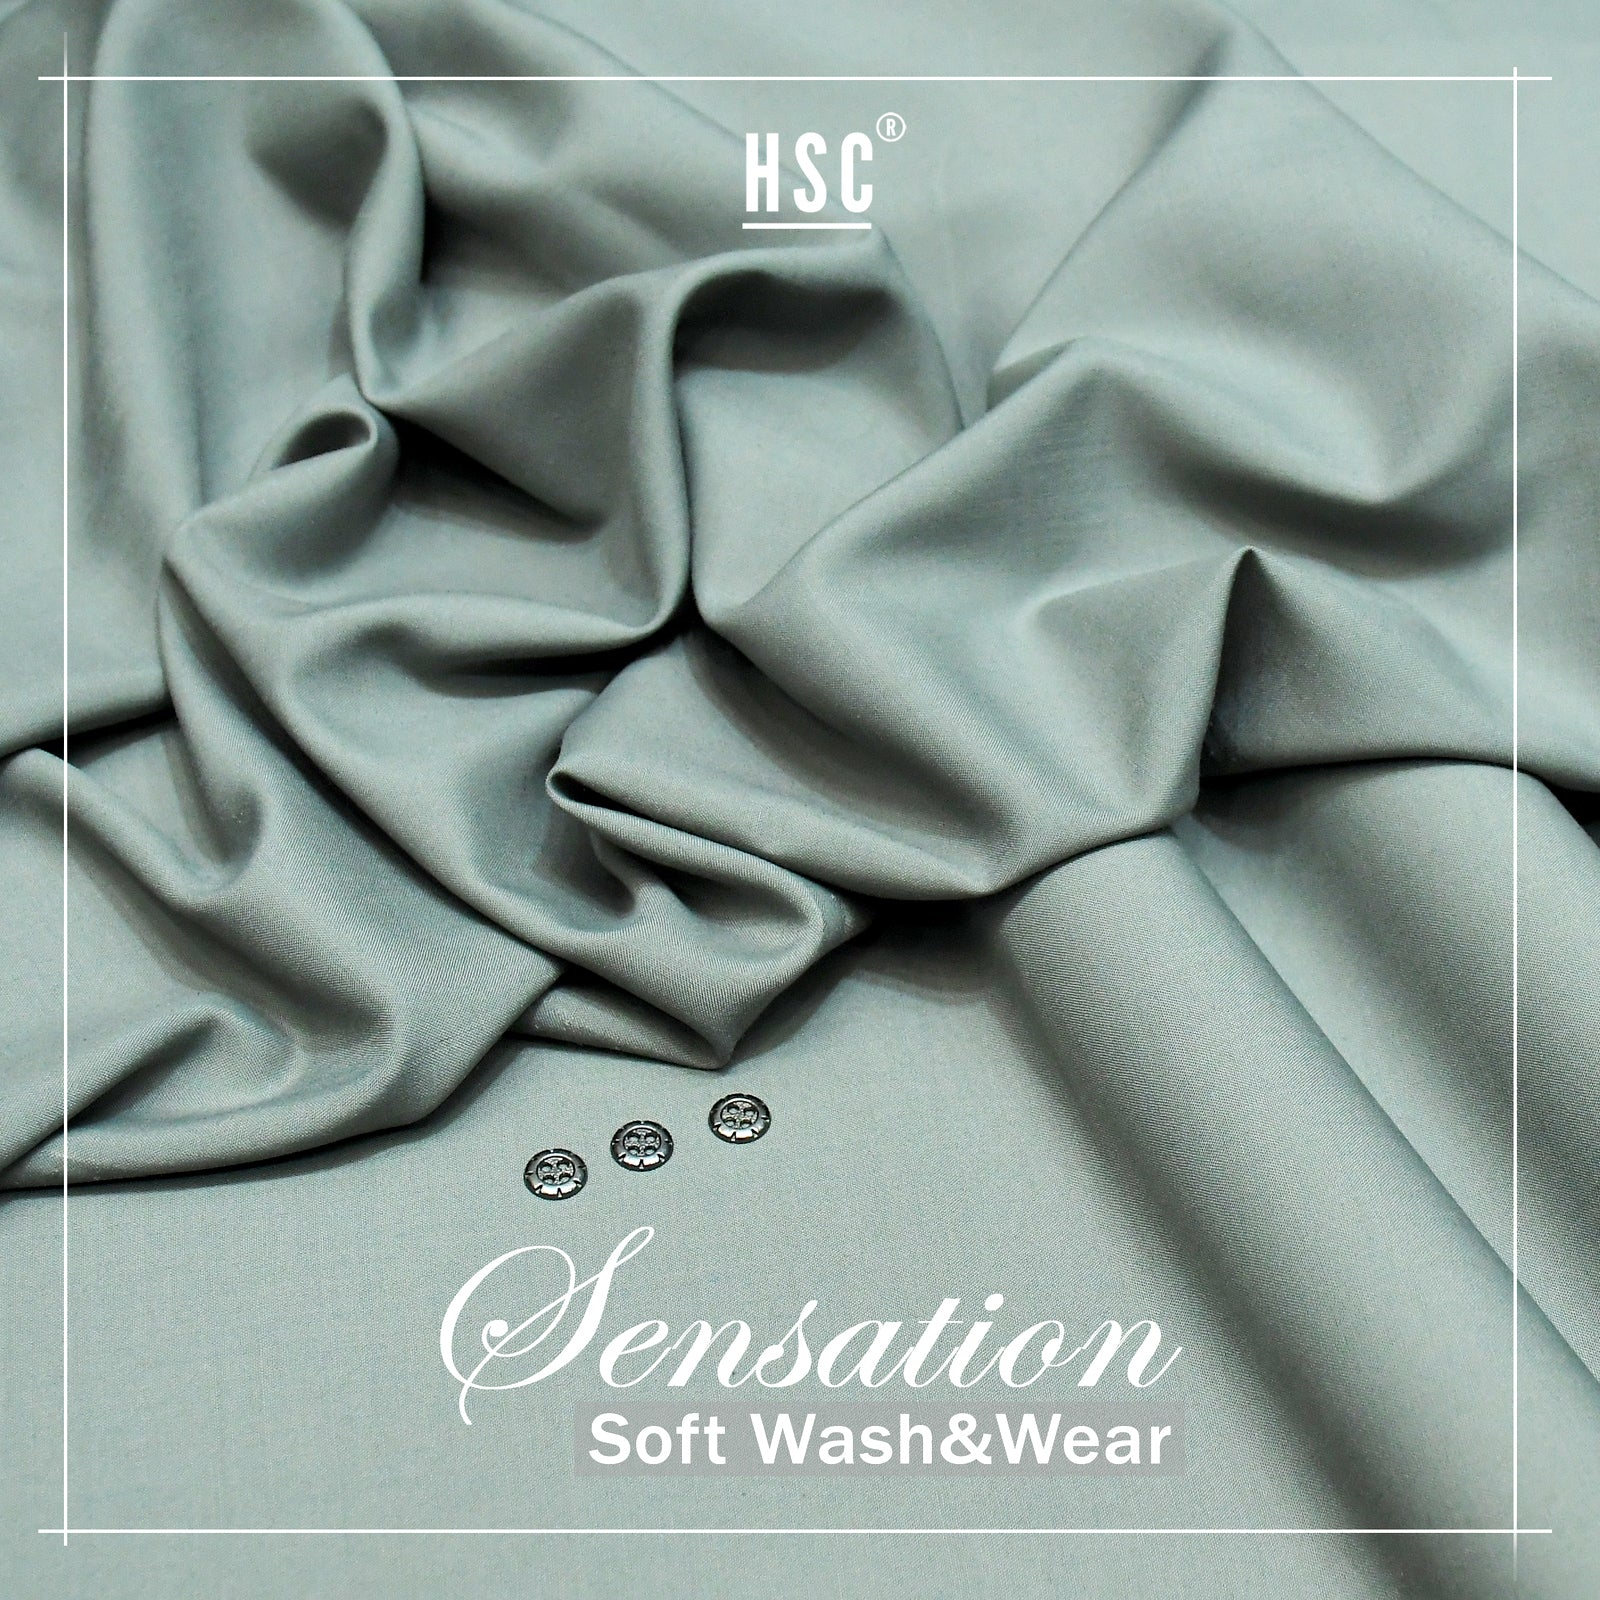 Buy 1 Get 1 Free Sensation Soft Wash&Wear - SSW15 HSC